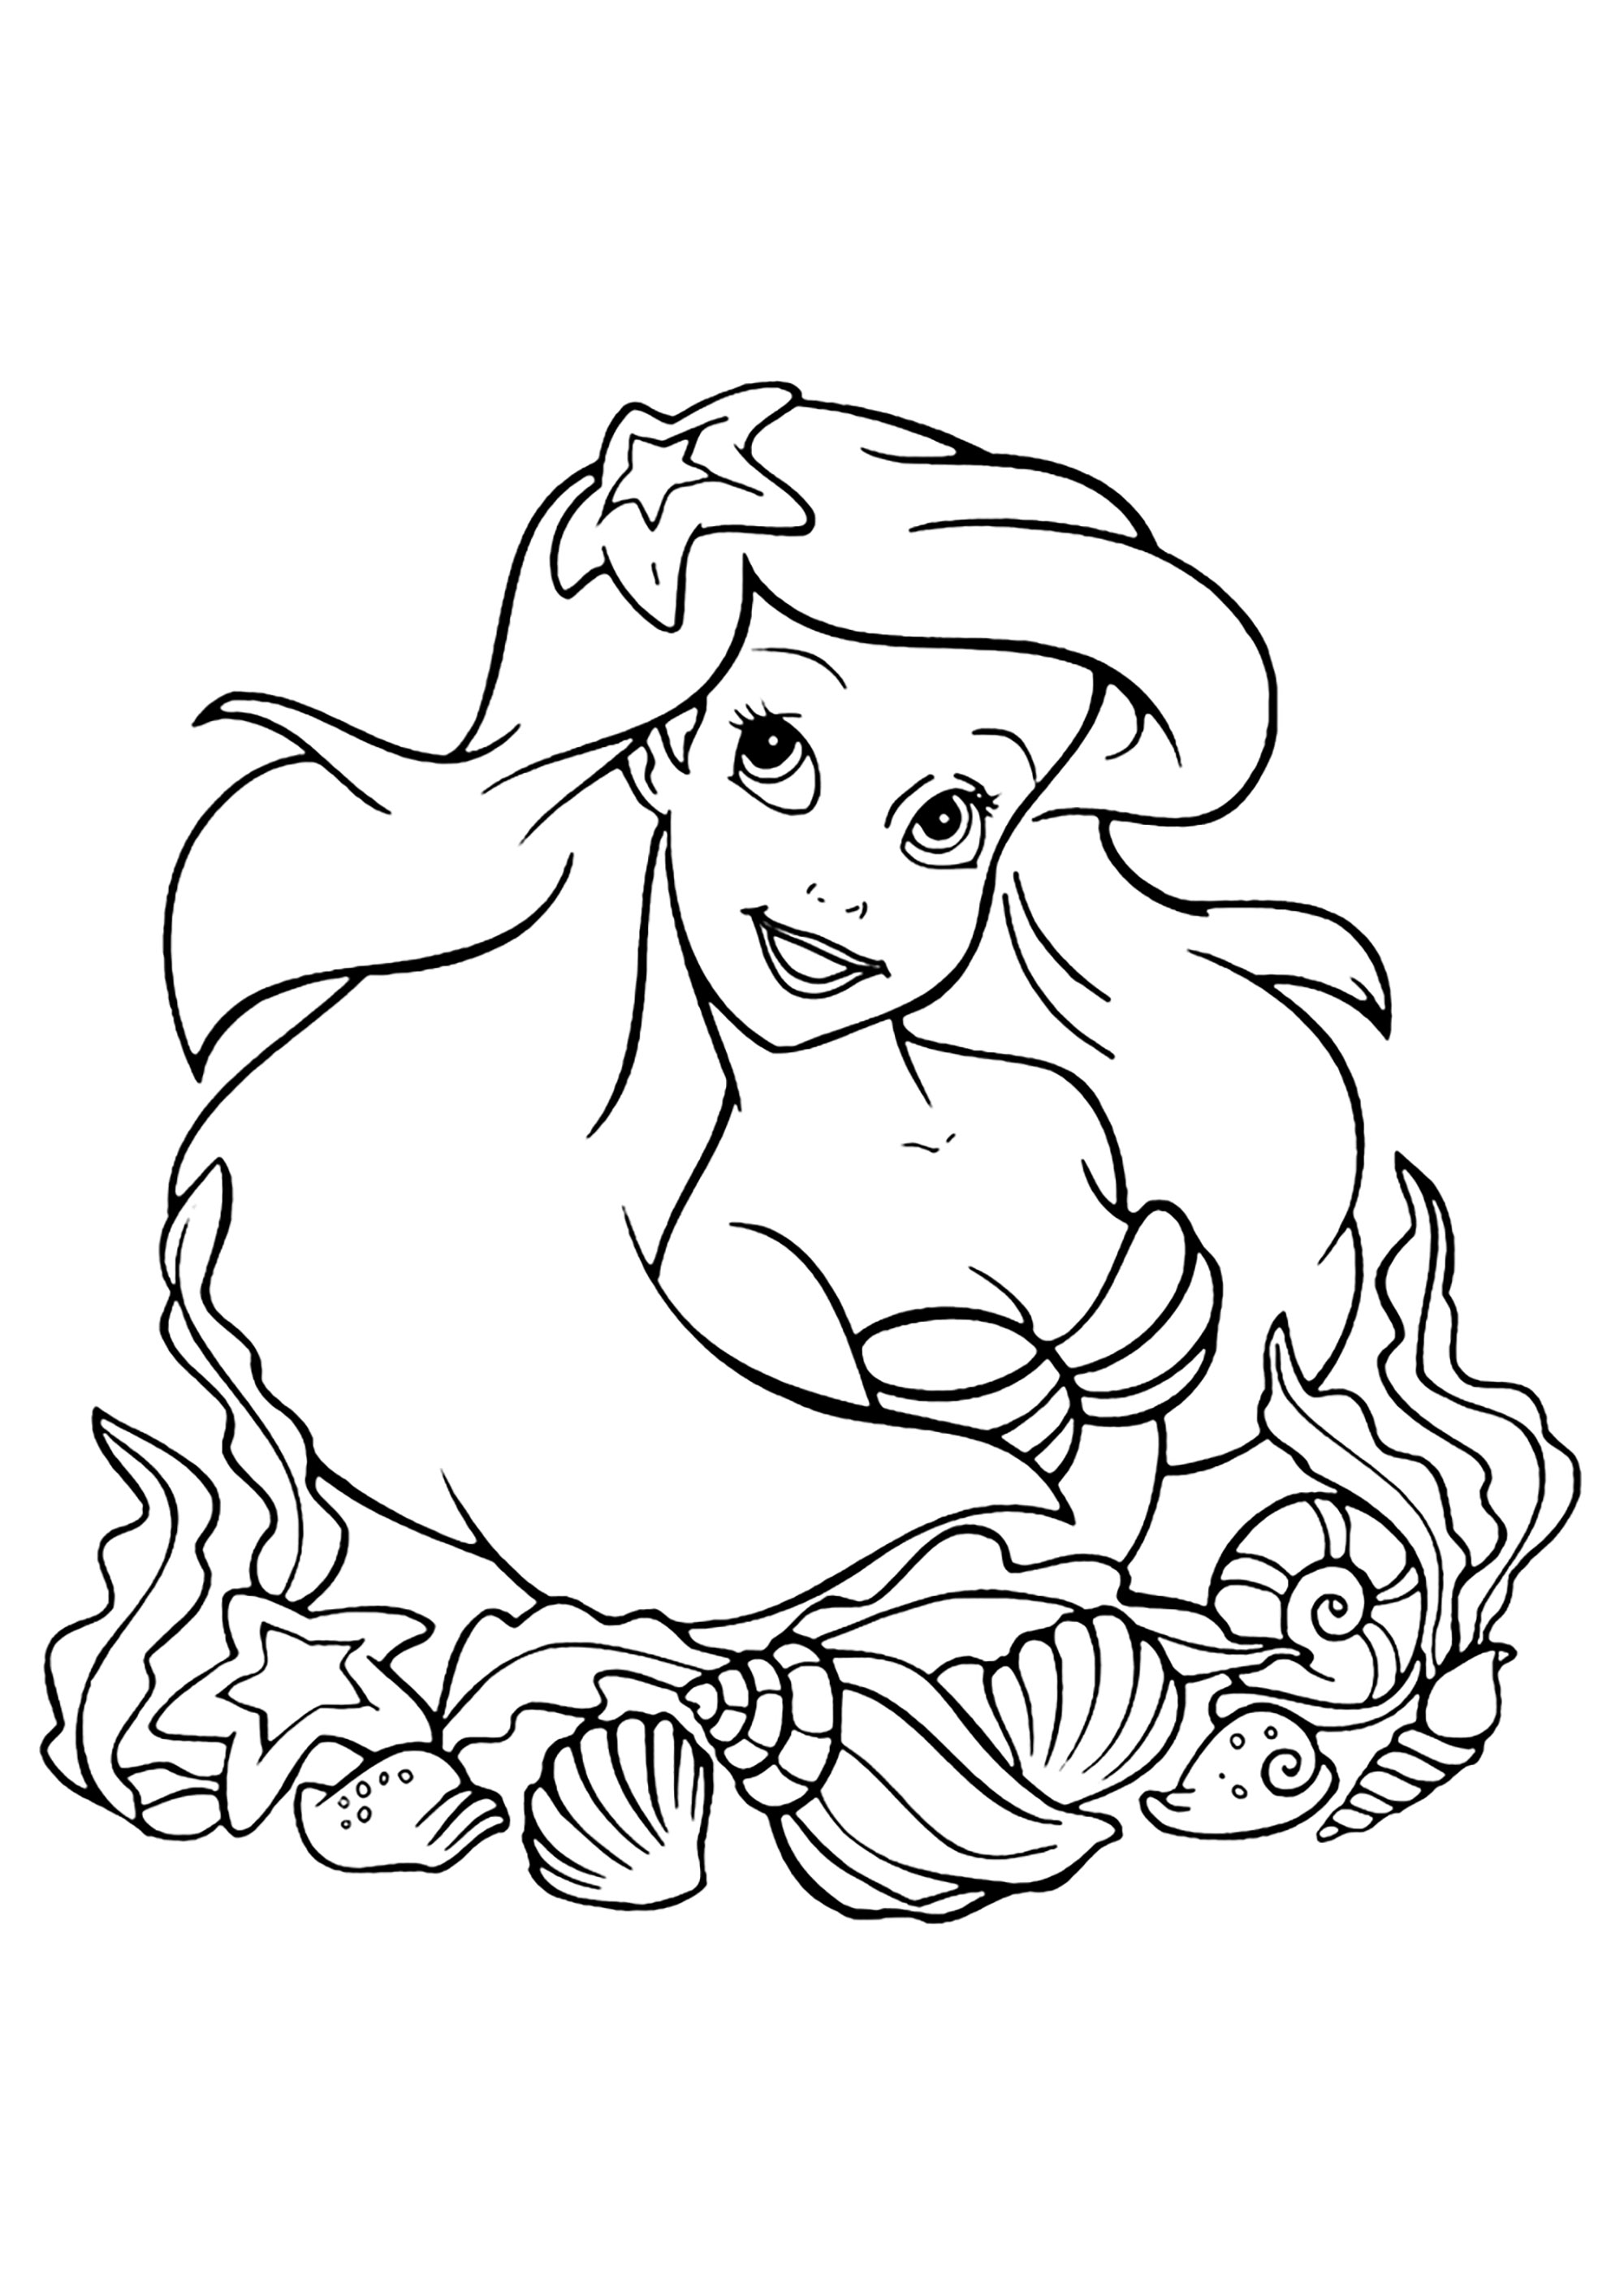 Ariel la Sirenita rodeada de bonitas conchas - La Sirenita - Dibujos ...